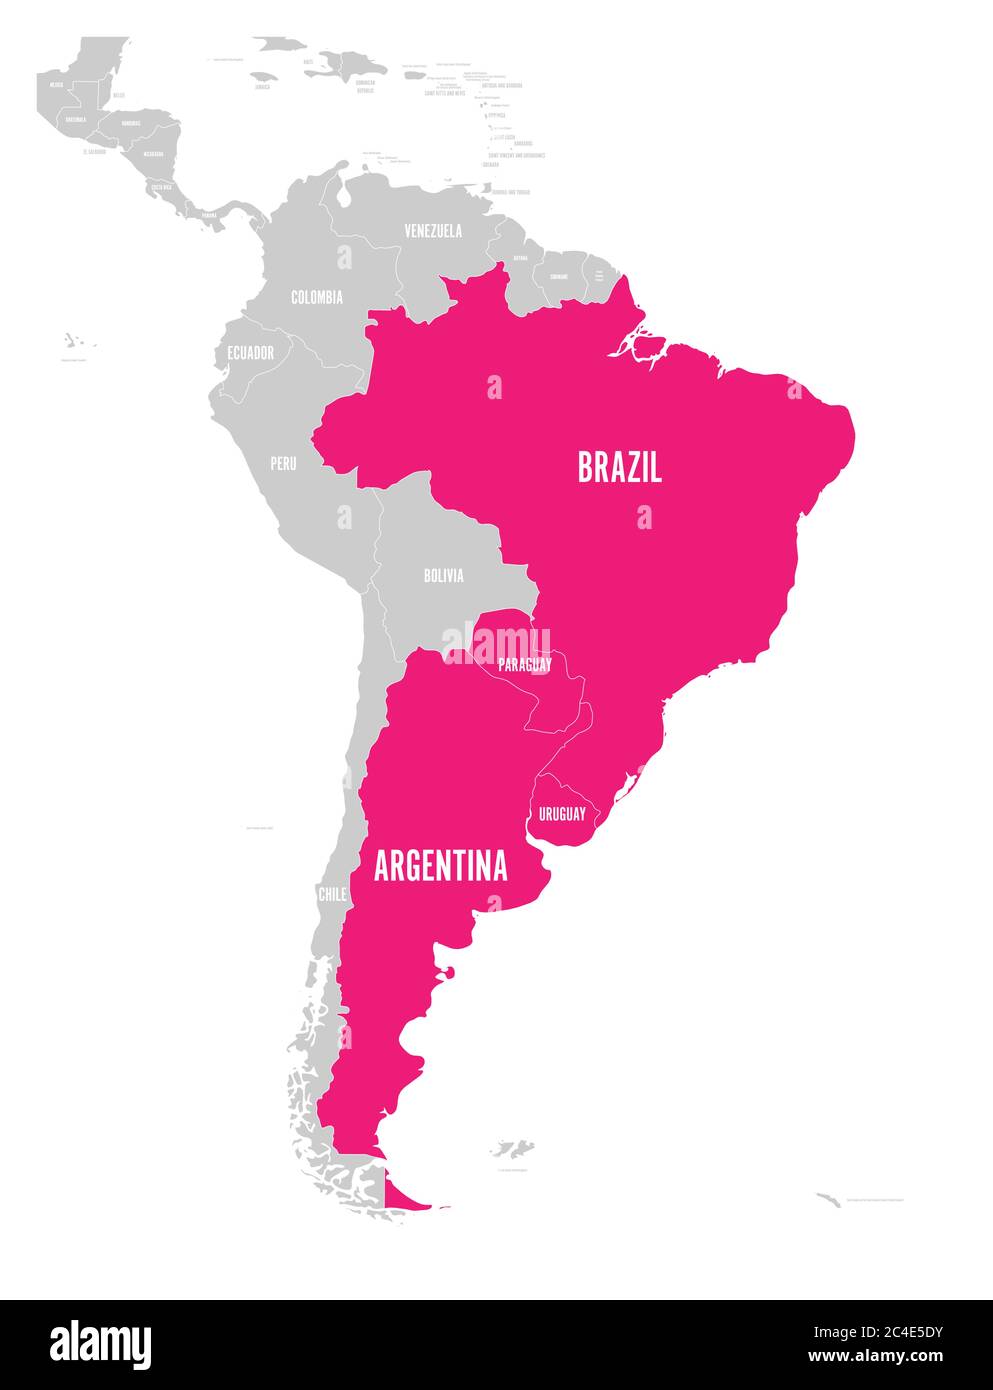 Karte der MERCOSUR-Länder. südamerikanischer Handelsverband. Rosa hervorgehobene Mitgliedsstaaten Brasilien, Paraguay, Uruguay und Argetina. Seit Dezember 2016. Stock Vektor